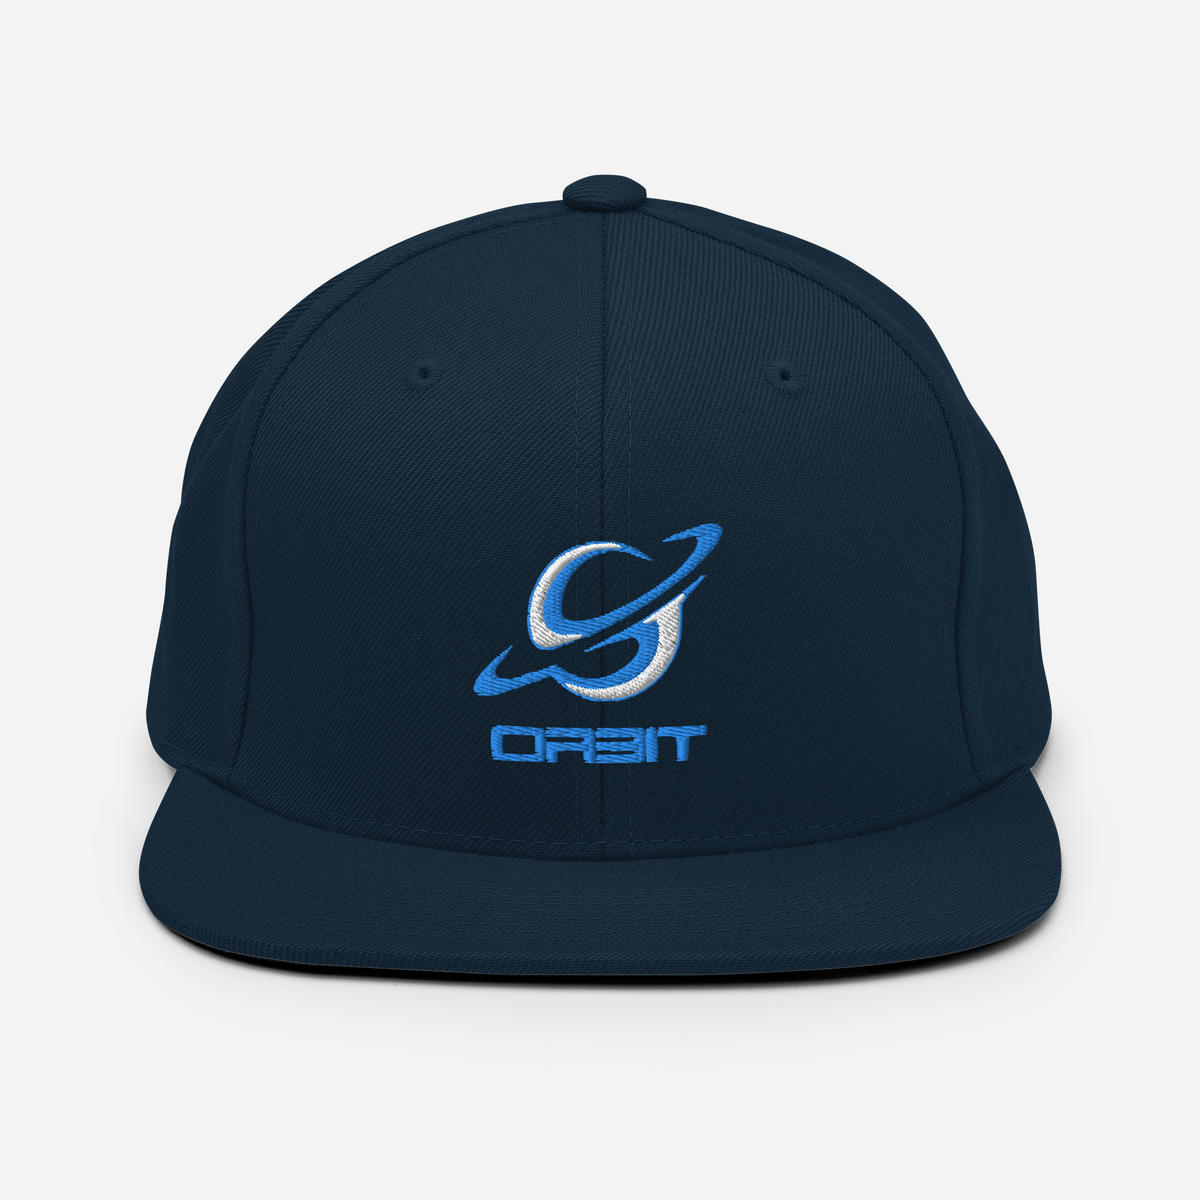 Orbit | On Demand | Embroidered Snapback Hat